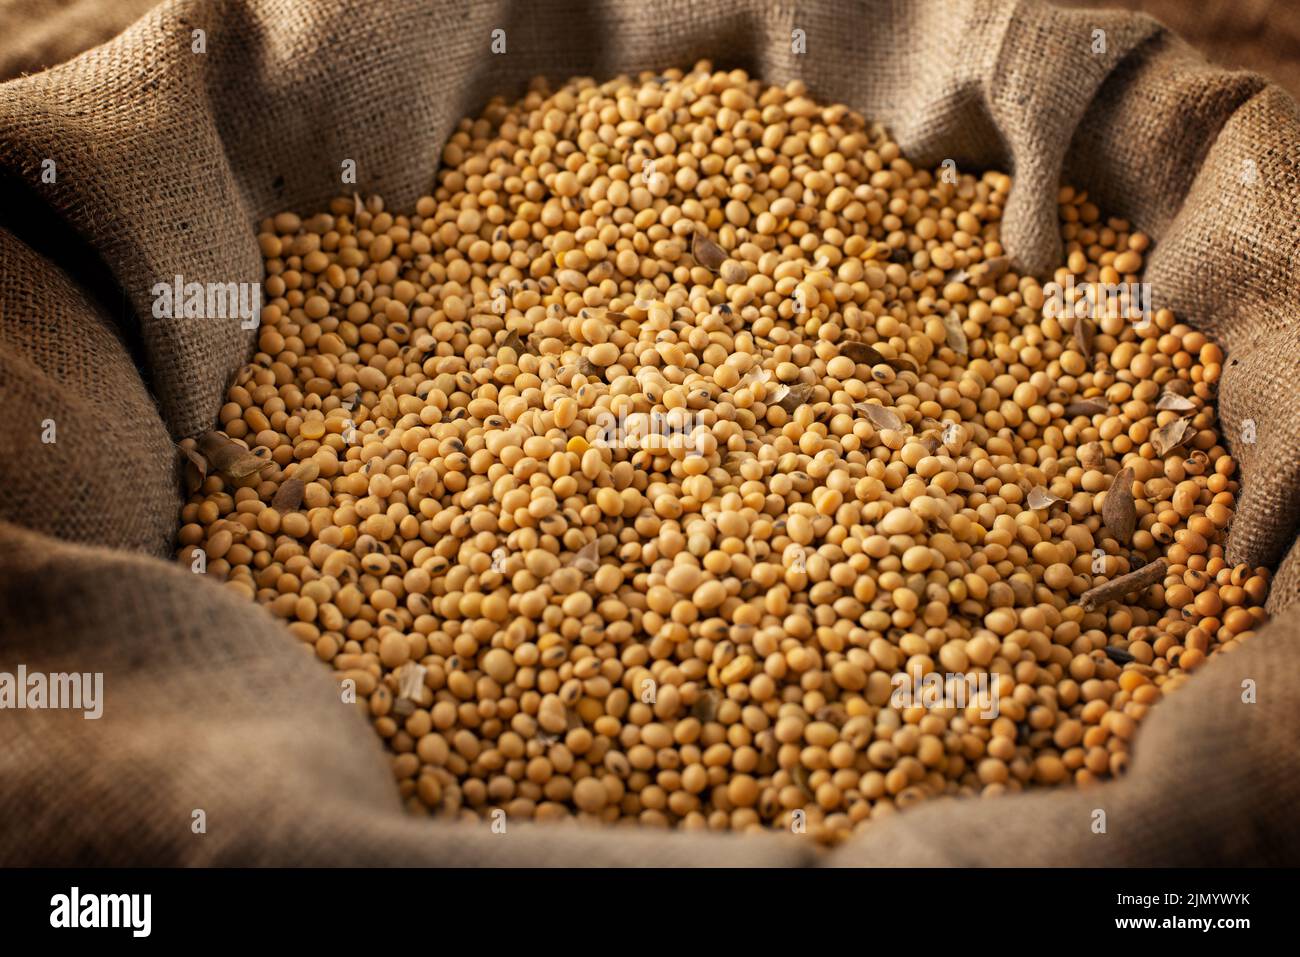 El fondo de la comida de sojas crudas en el saco de arpillera Foto de stock